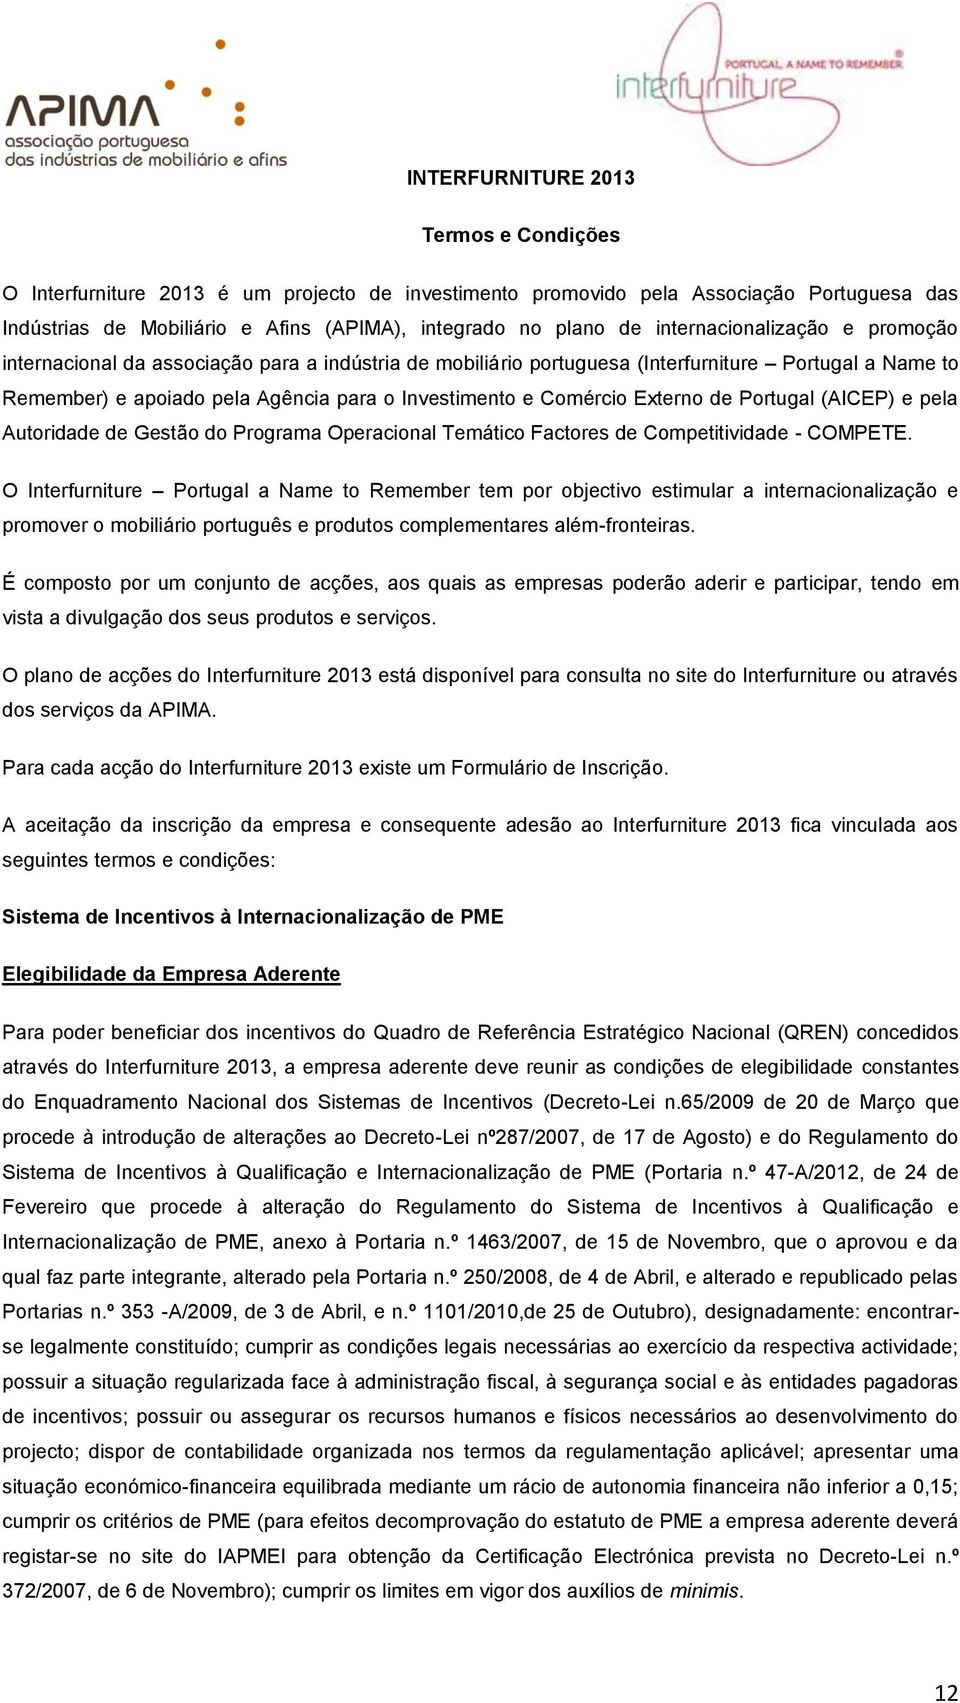 Externo de Portugal (AICEP) e pela Autoridade de Gestão do Programa Operacional Temático Factores de Competitividade - COMPETE.